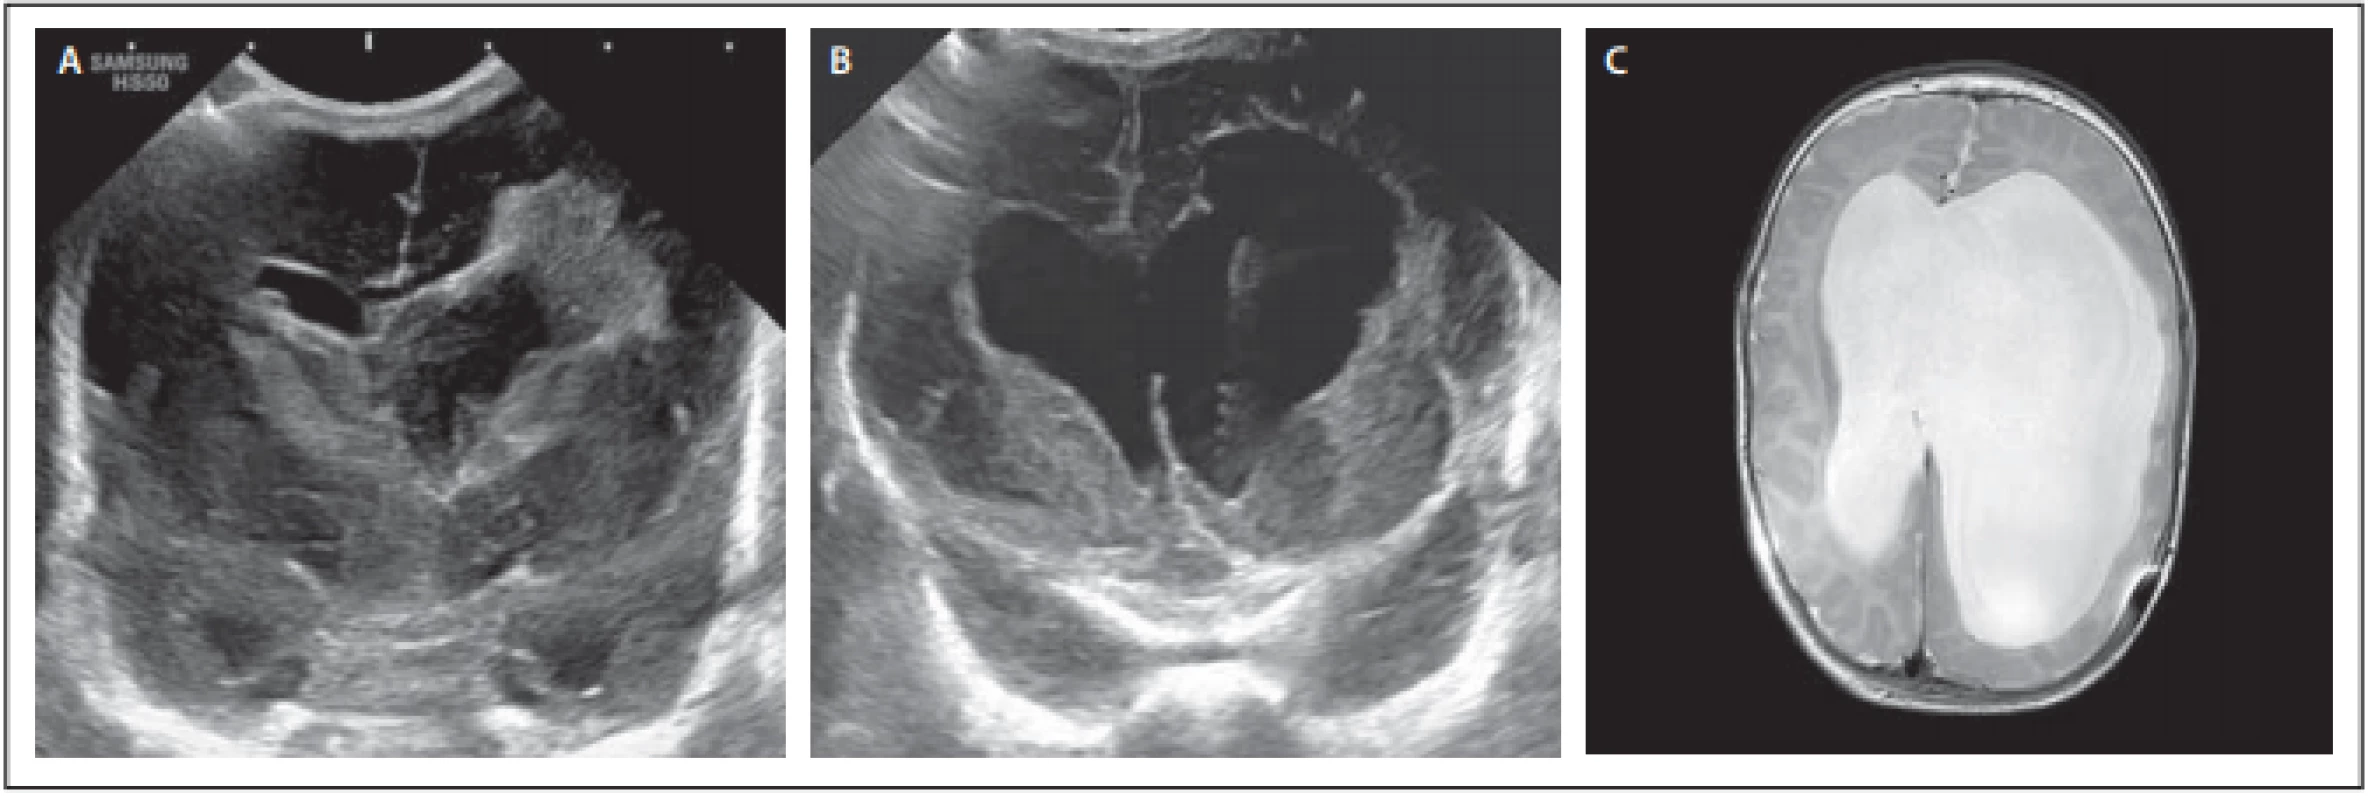 Pacientka 1 – (A) předoperační sonografi e s viditelnými koaguly v obou postranních komorách s extenzí periventrikulárně
vlevo; (B) pooperační sonografický snímek se zachyceným katetrem podkožního portu; (C) MR mozku před implantací shuntu.<br>
Fig. 1. Female patient 1 – (A) preoperative sonography with visible blood clots in both lateral ventricles with periventricular extension
to the left; (B) postoperative sonography with visible subcutaneous port catheter; (C) MRI of the brain before shunt implantation.